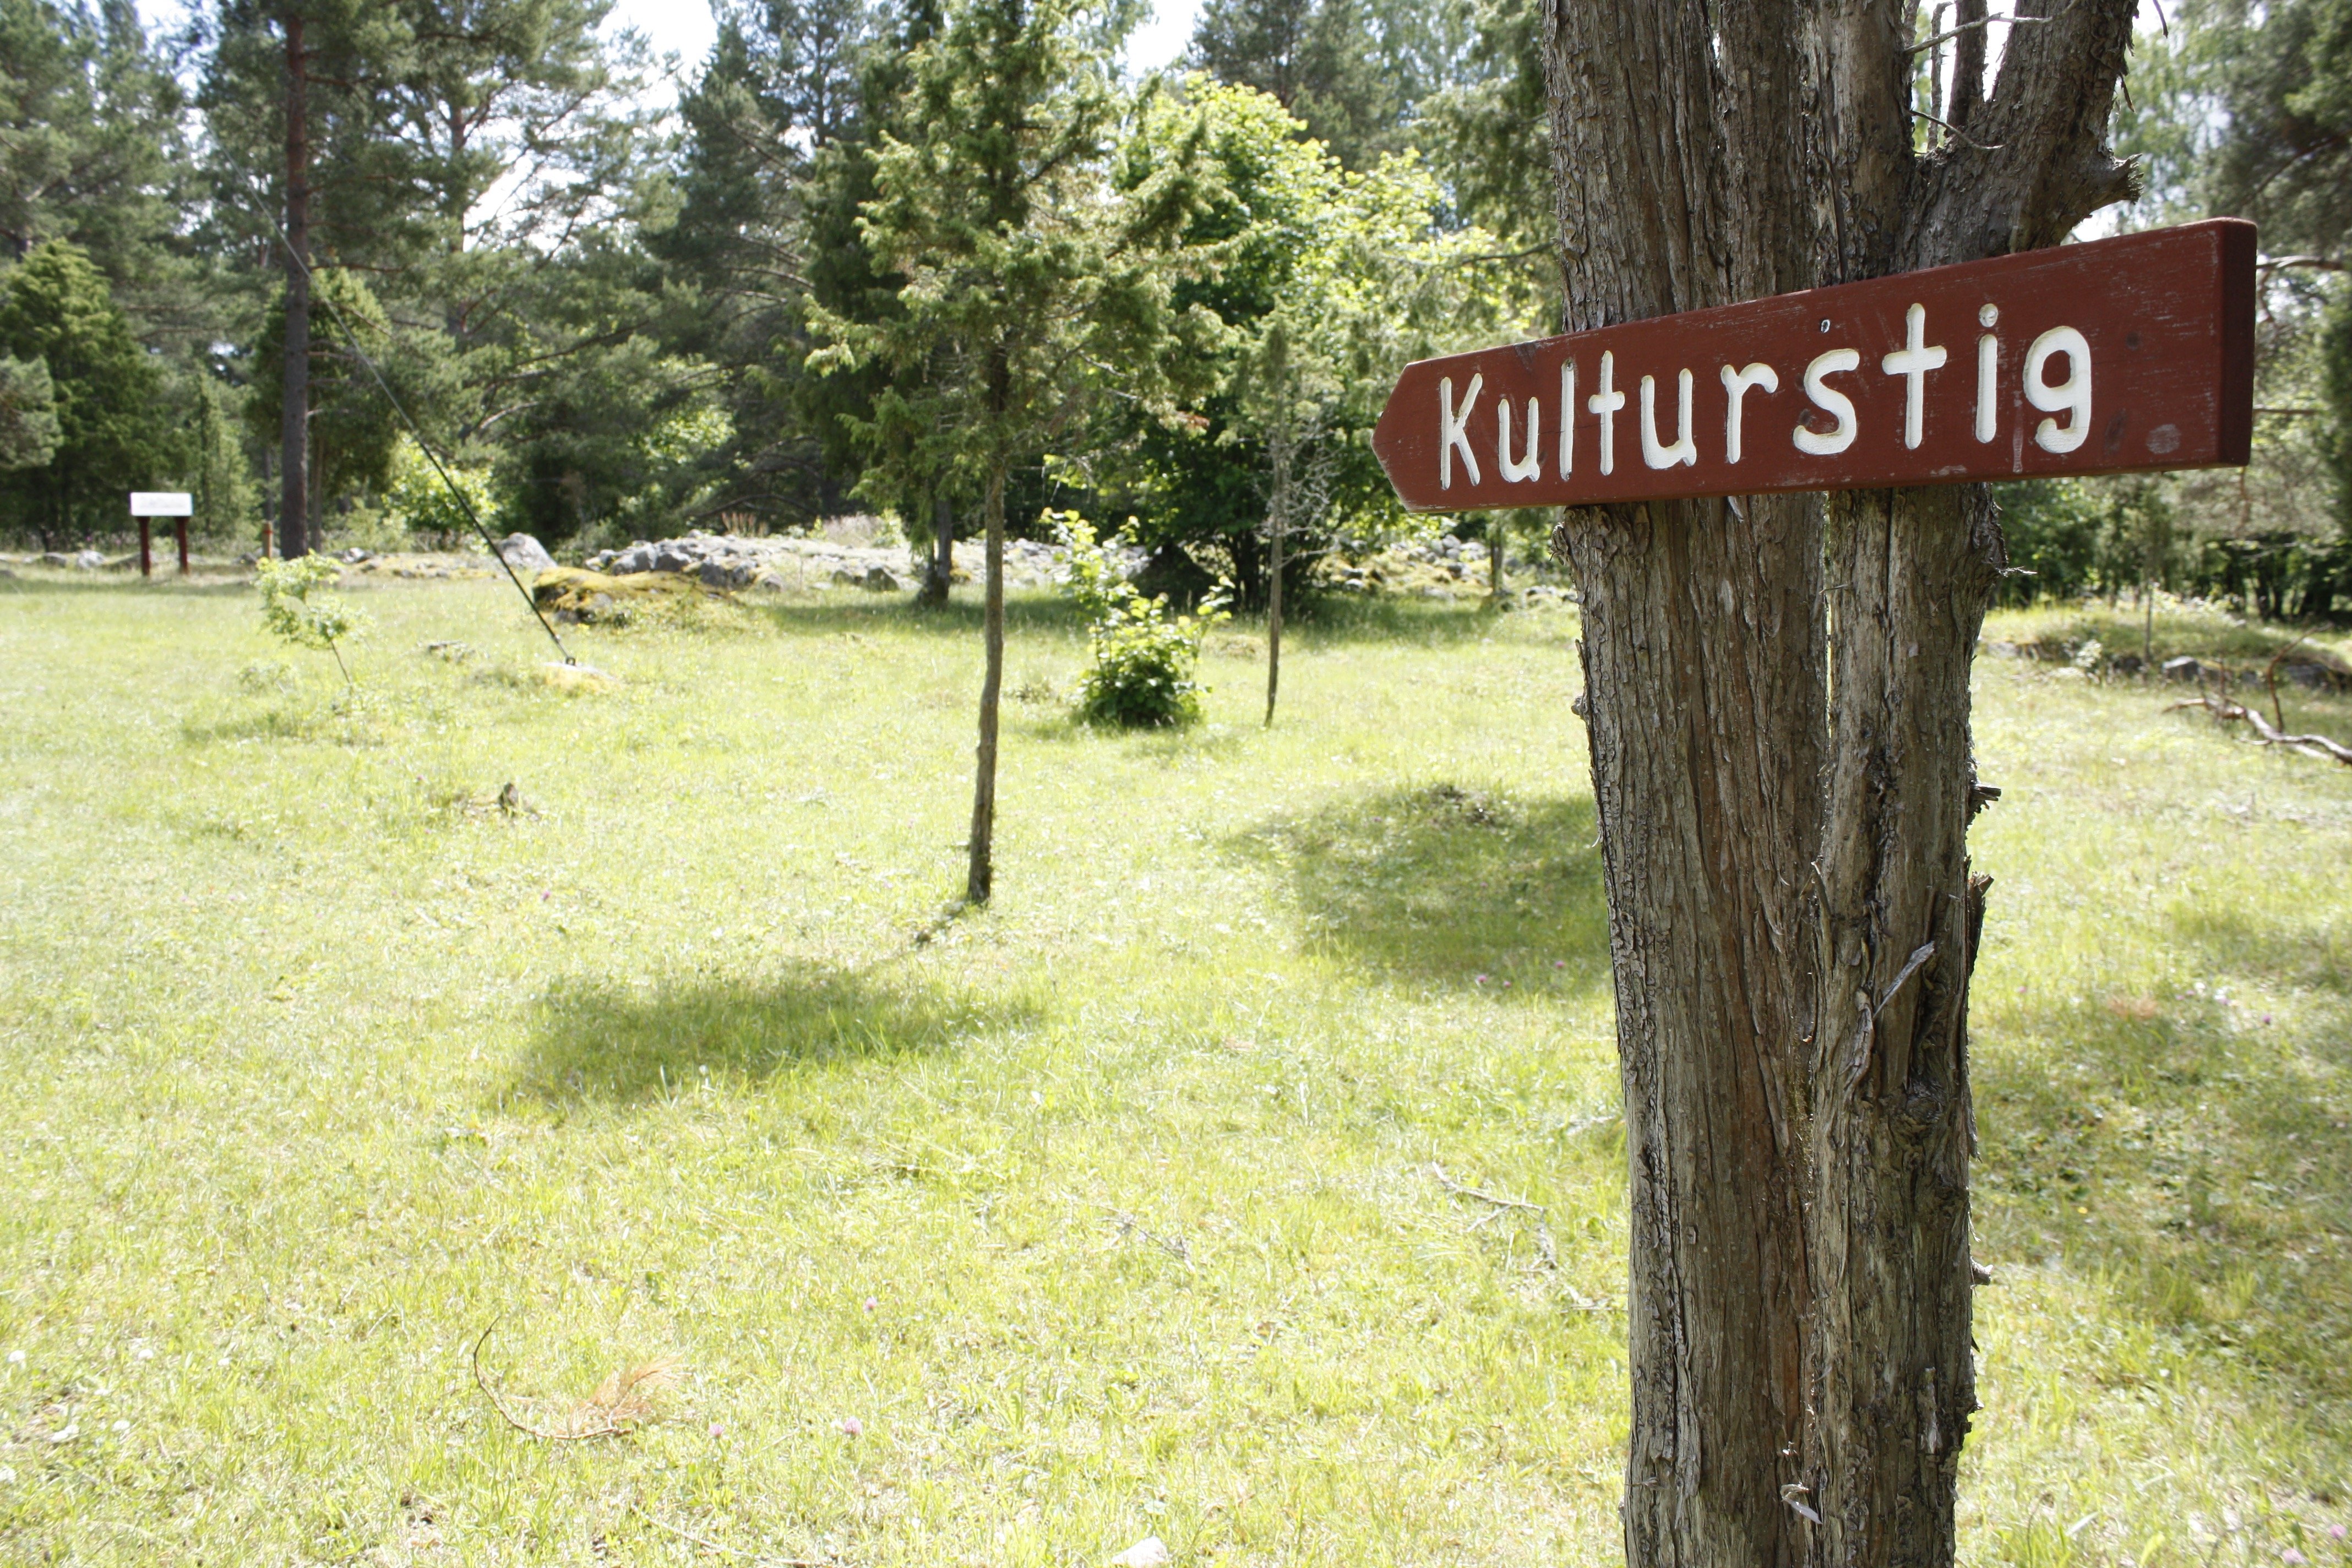 På en gräsyta står flera träd. En skylt med texten "Kulturstig" är uppsatt på ett av träden. 